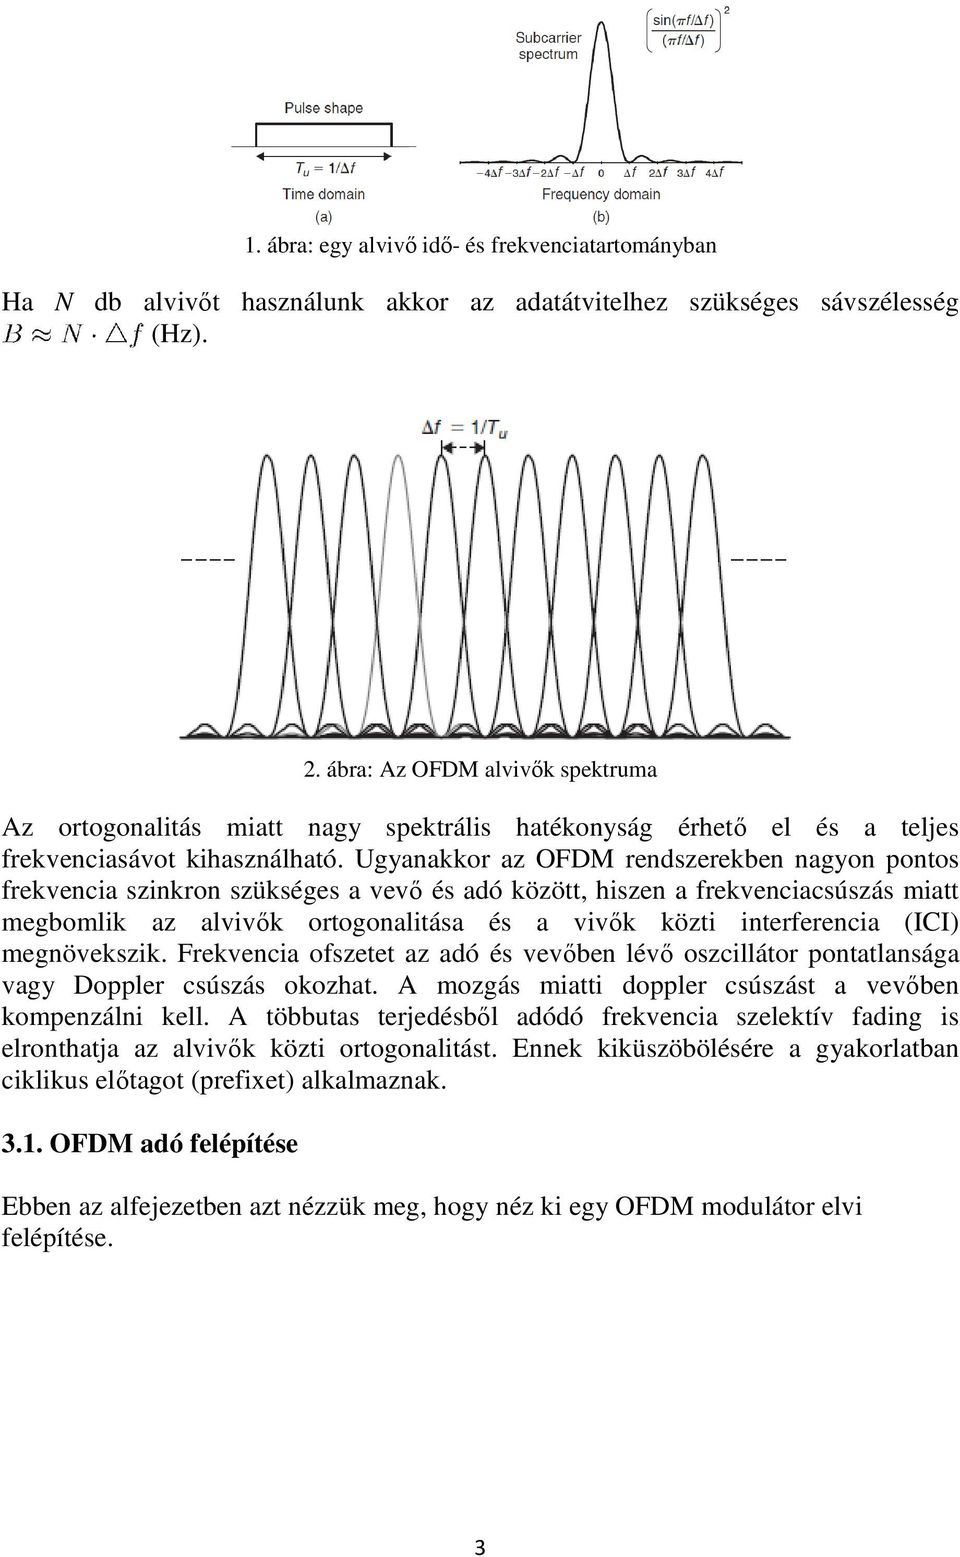 Ugyanakkor az OFDM rendszerekben nagyon pontos frekvencia szinkron szükséges a vevő és adó között, hiszen a frekvenciacsúszás miatt megbomlik az alvivők ortogonalitása és a vivők közti interferencia